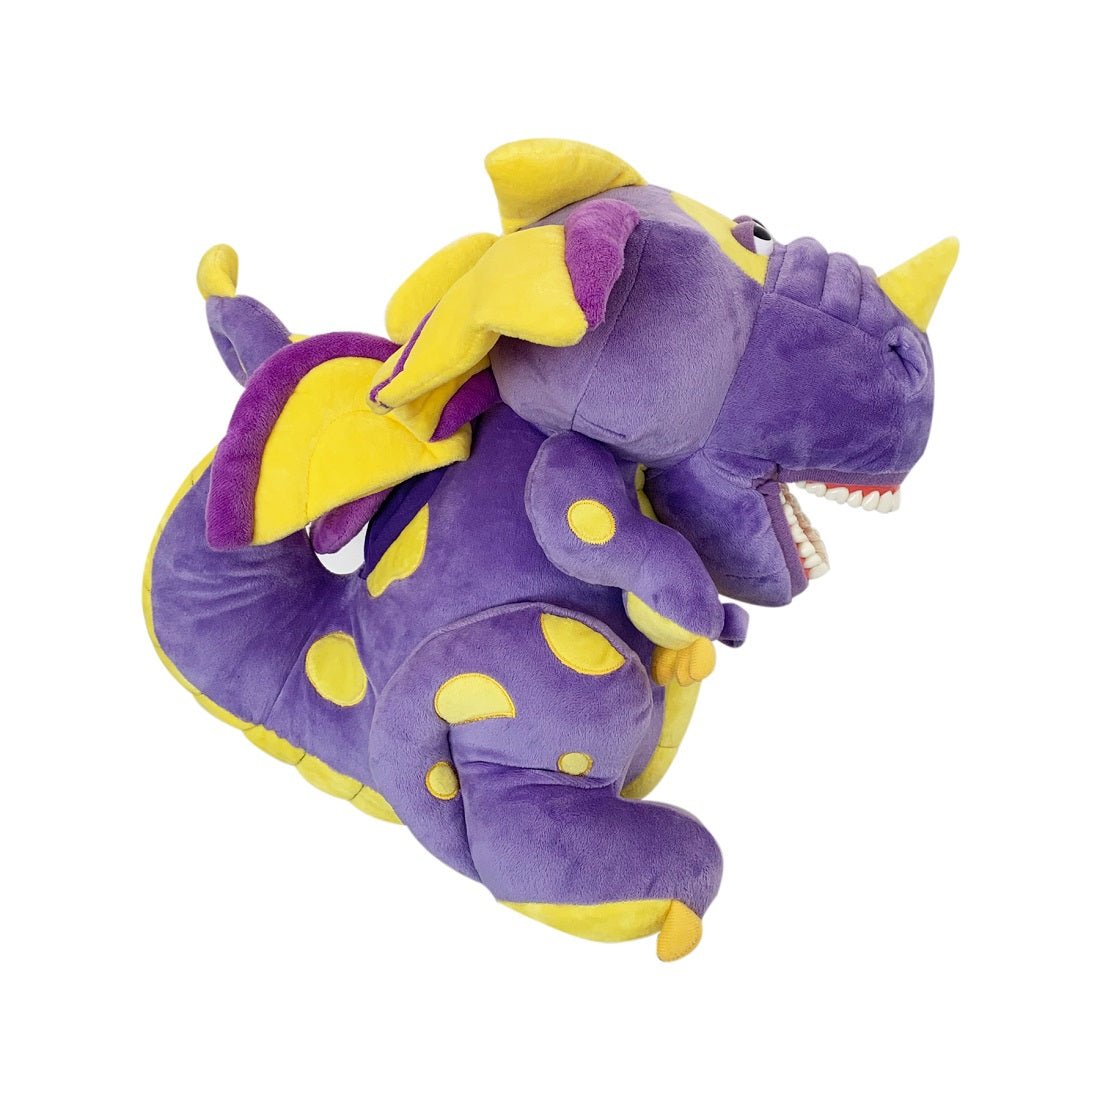 Purple Dragon Dental Stuff Doll